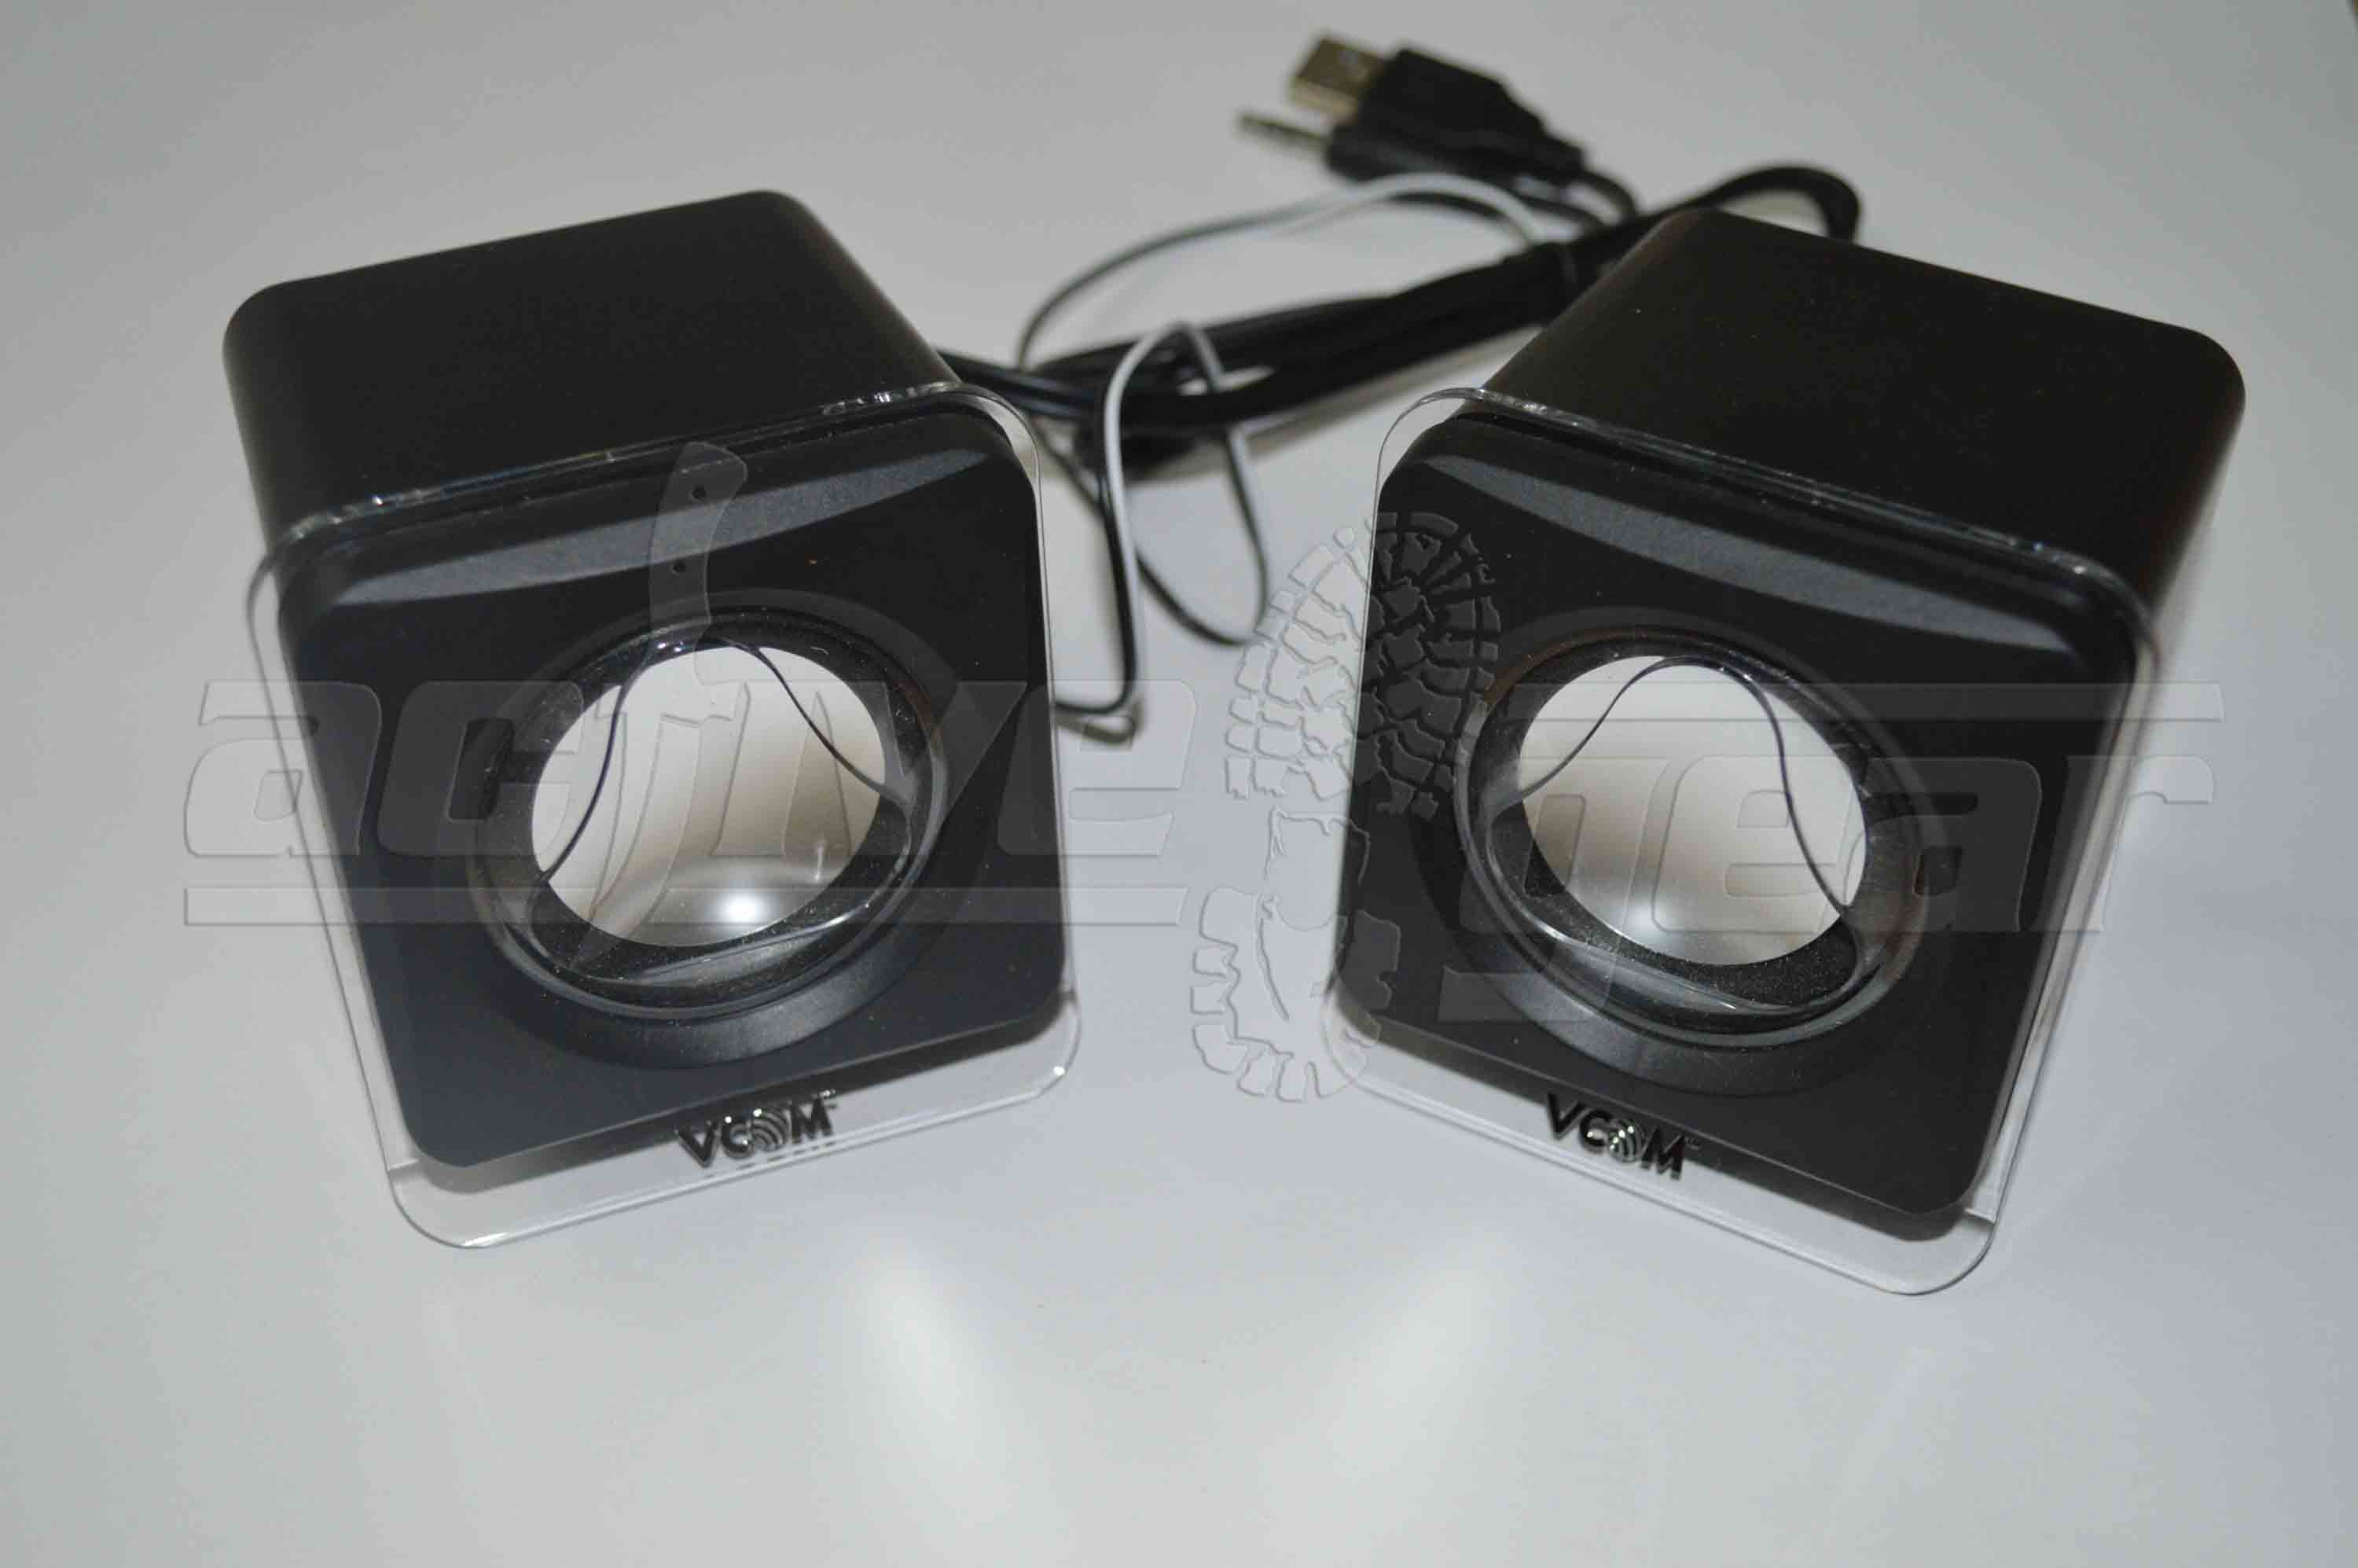 DS108 Mini speakers